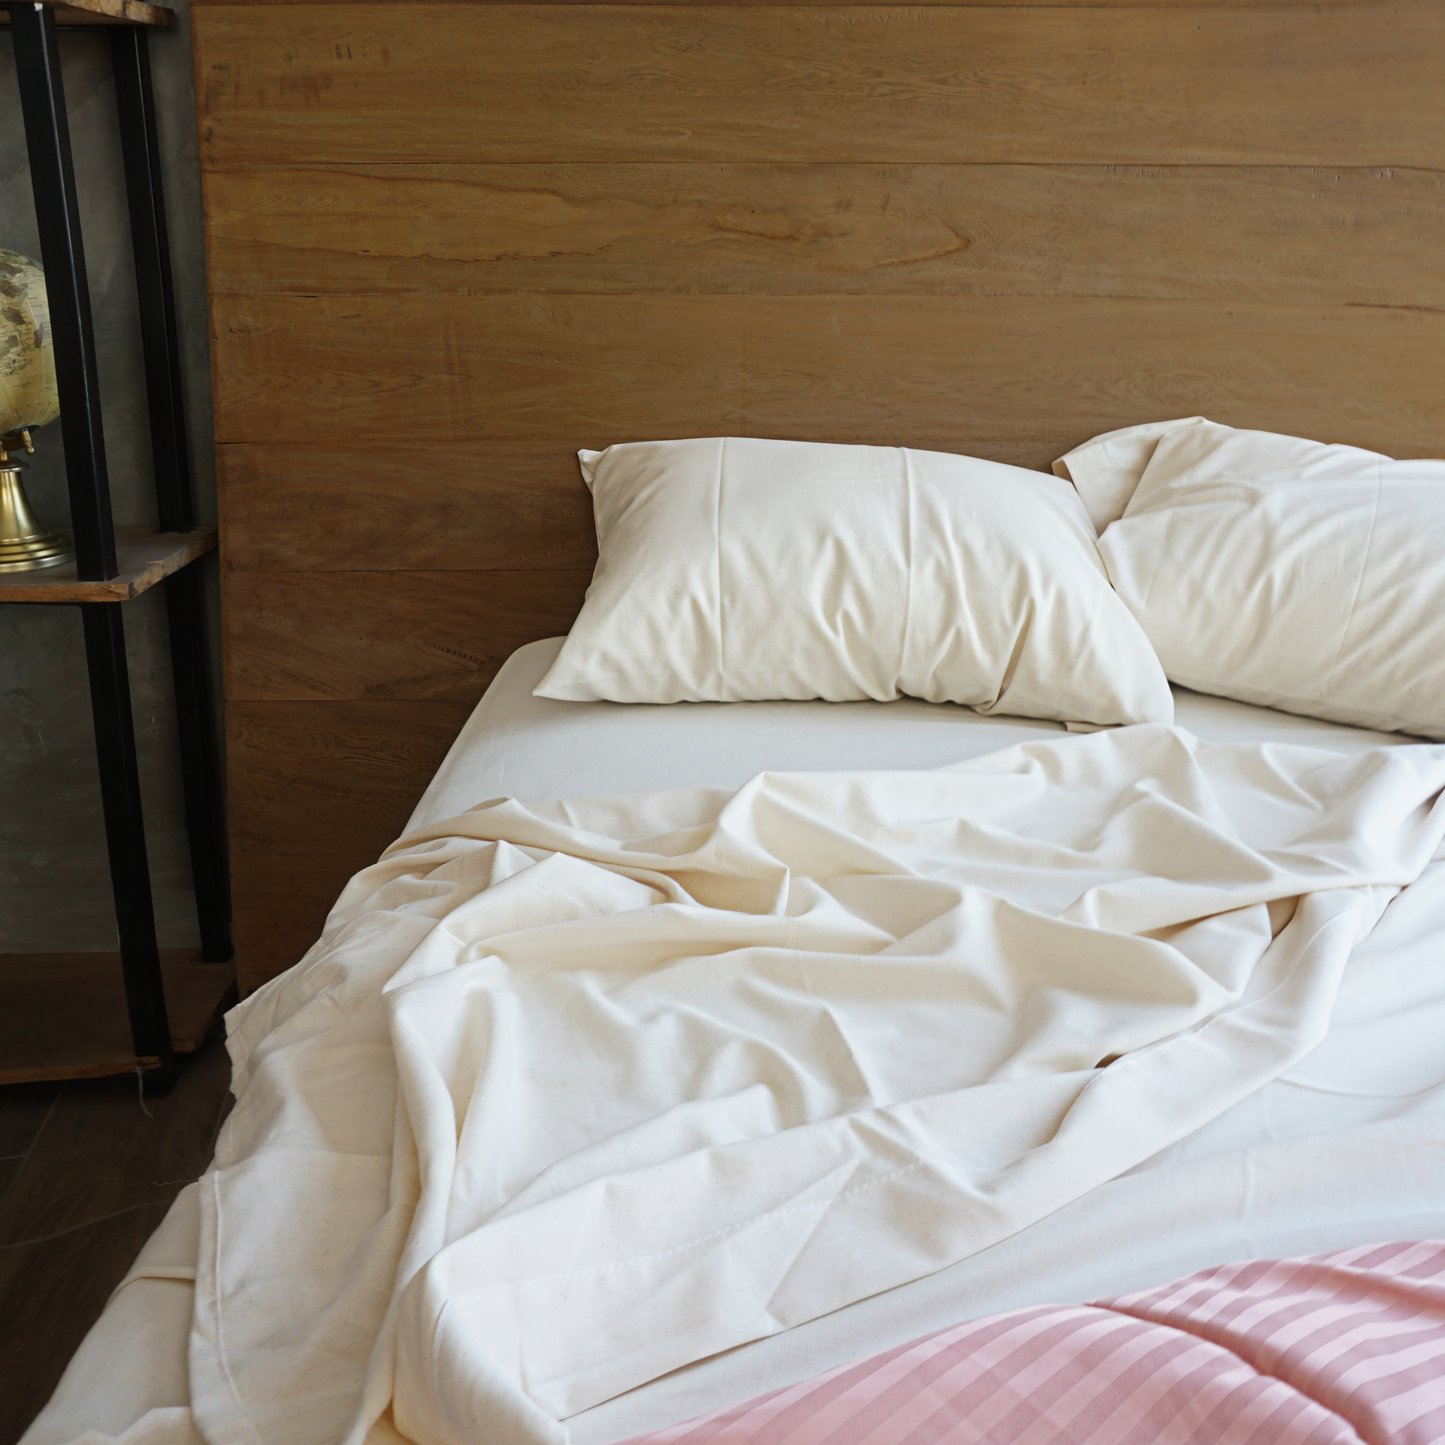 En una habitación se muestra una cama destendida luciendo unas sabanas y fundas decorativas para almohada de color natural.